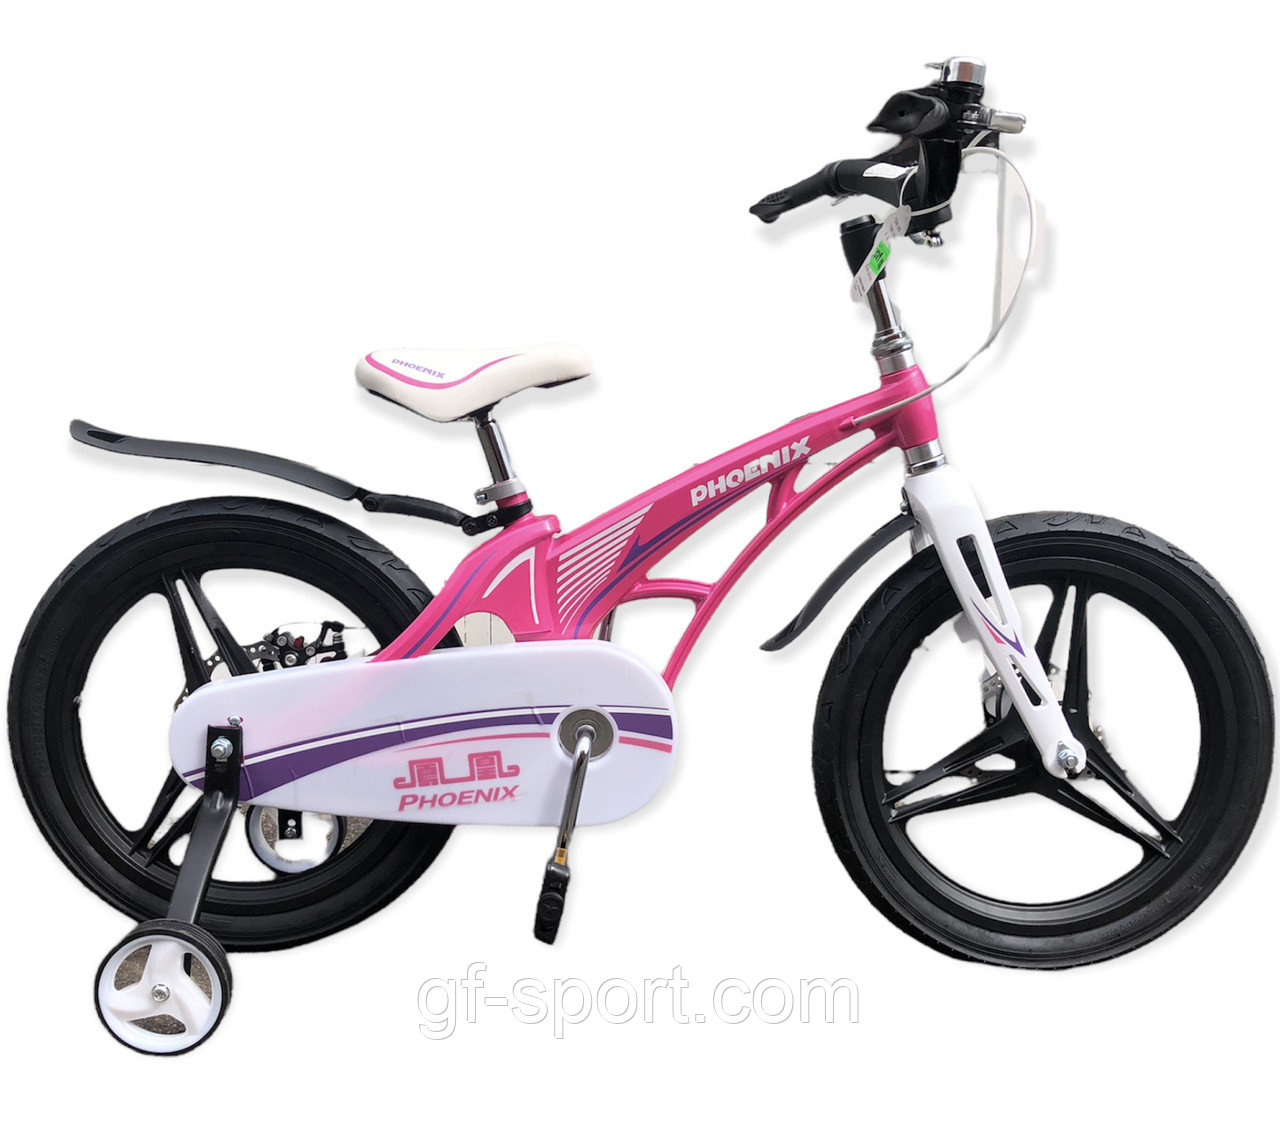 Велосипед Phoenix розовый алюминиевый сплав оригинал детский с холостым ходом 18 размер (529-18)